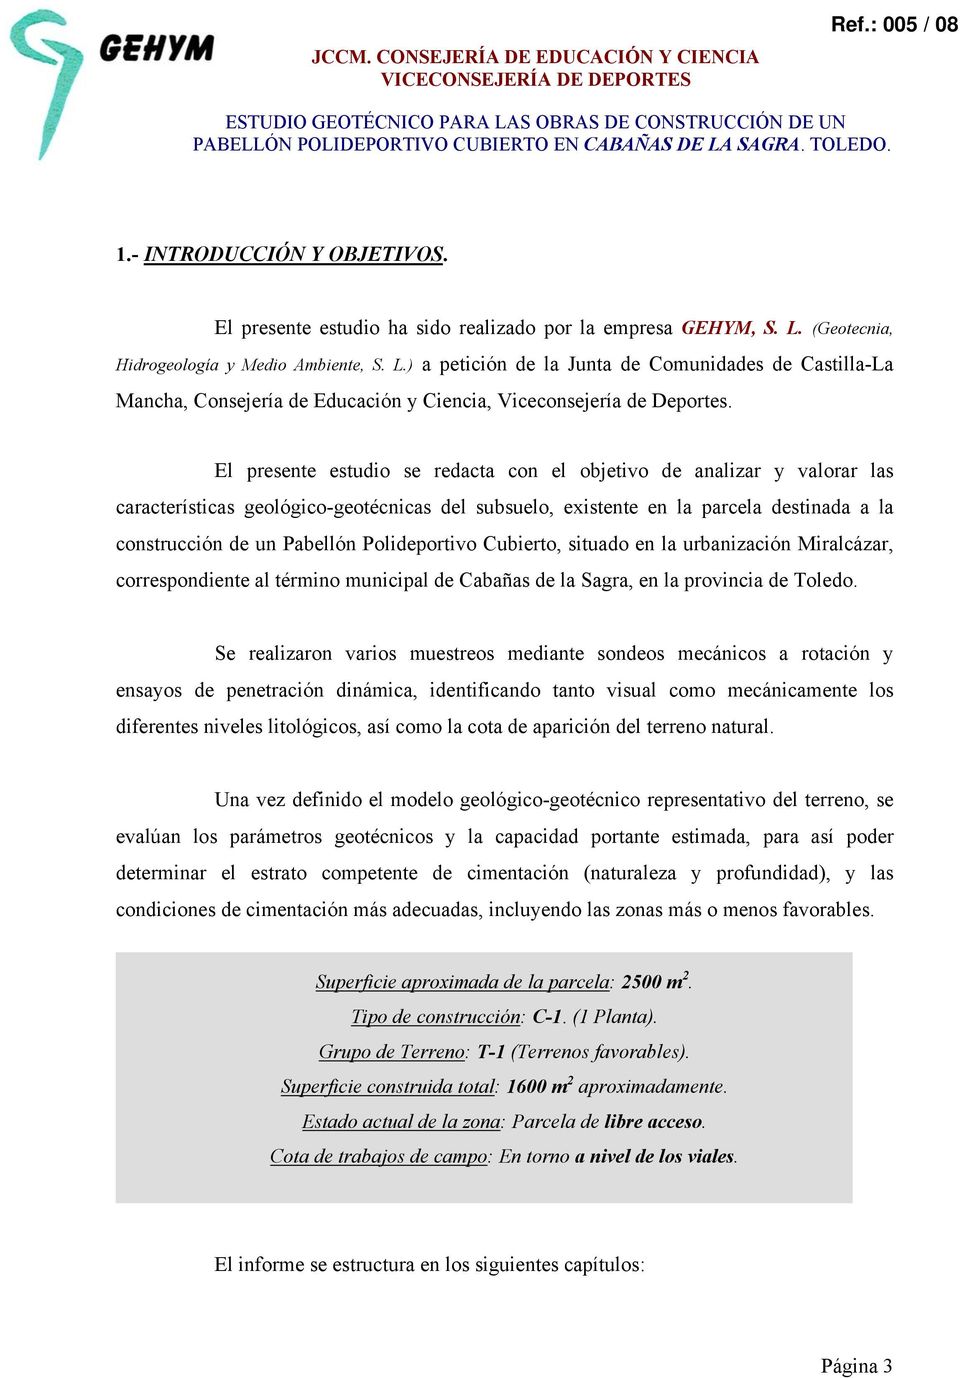 (Geotecnia, Hidrogeología y Medio Ambiente, S. L.) a petición de la Junta de Comunidades de Castilla-La Mancha, Consejería de Educación y Ciencia, Viceconsejería de Deportes.